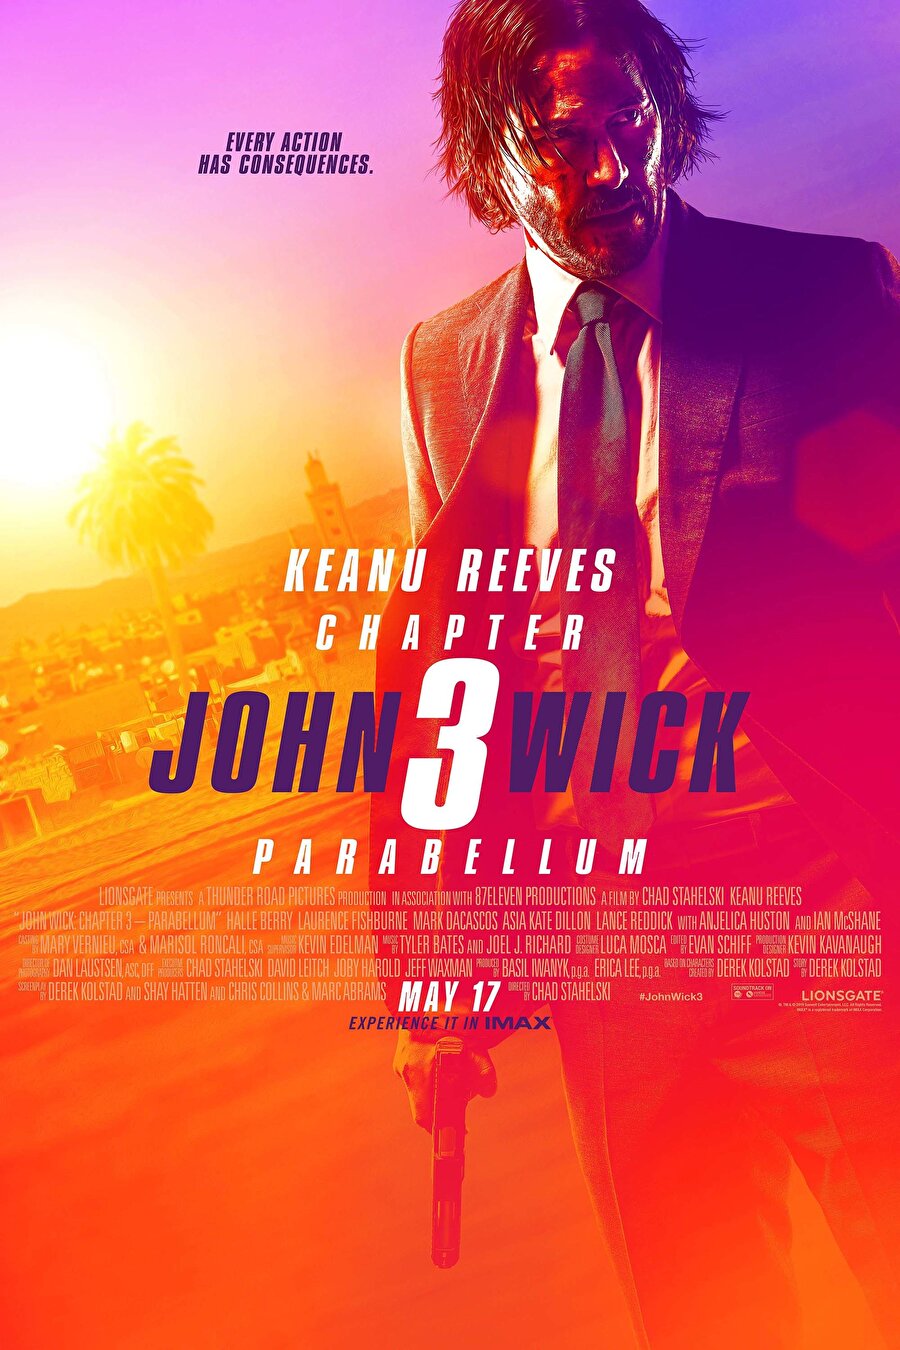 John Wick 3: Parabellum
Keanu Reeves'in başrolünde yer aldığı aksiyon serisinin üçüncü filmi olan "John Wick 3: Parabellum" bugün izleyici ile buluşacak.Serinin yeni bölümü, ikinci filmin sonu itibarıyla ölüsüne 14 milyon dolar değer biçilen ve gizli suikastçı birliğinden atılan John Wick'in, dünyanın bütün suikastçıları peşindeyken verdiği hayatta kalma mücadelesini konu ediniyor.Keanu Reeves'a başrolde Ian McShane, Halle Berry, Laurence Fishburne, Anjelica Huston, Asia Kate Dillon, Jason Mantzoukas ve Lance Reddick'in eşlik ettiği filmin yönetmen koltuğunda Chad Stahelski oturuyor.